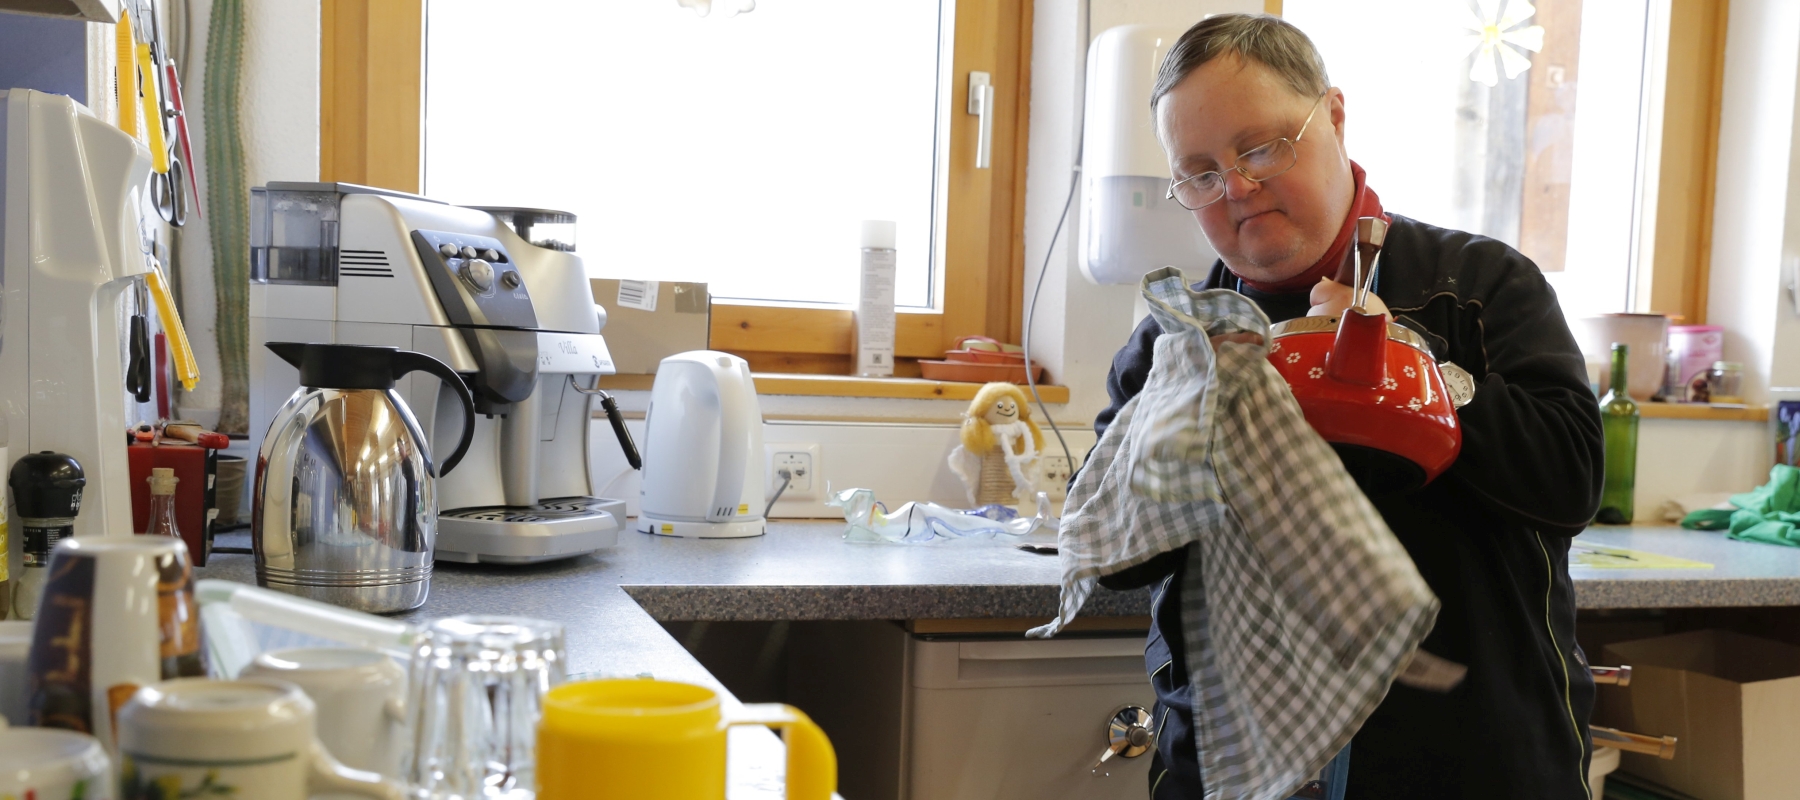 Ein Mann mit Down-Syndrom steht in der Küche und trocknet eine Teekanne ab.